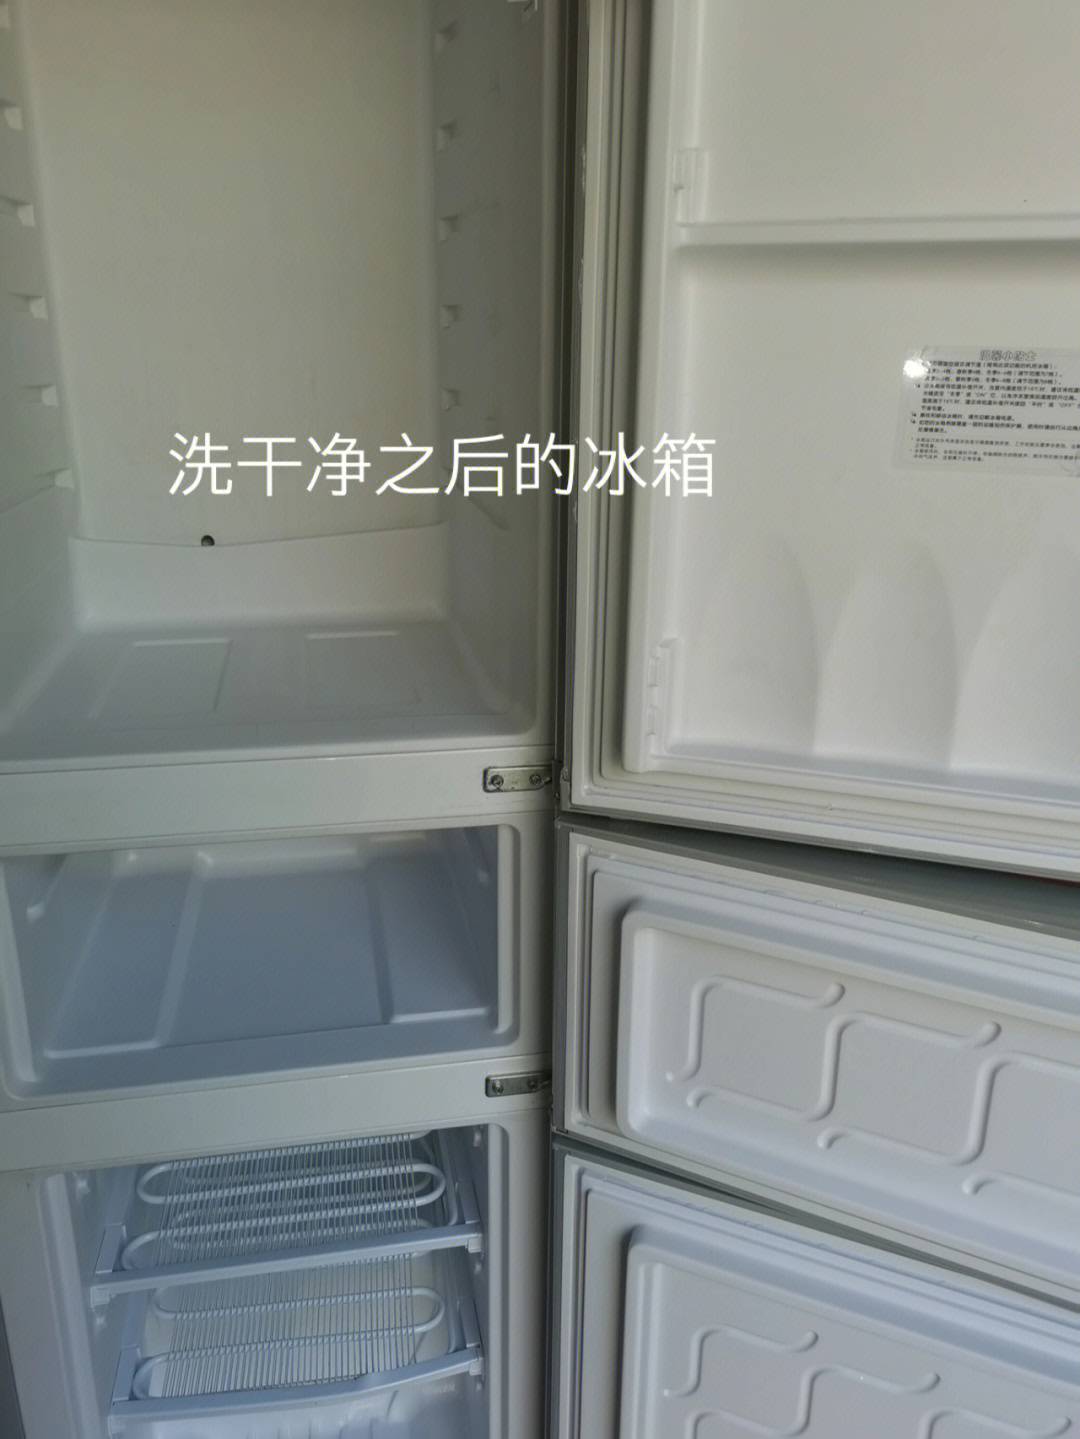 冰箱清洗图片前后图片